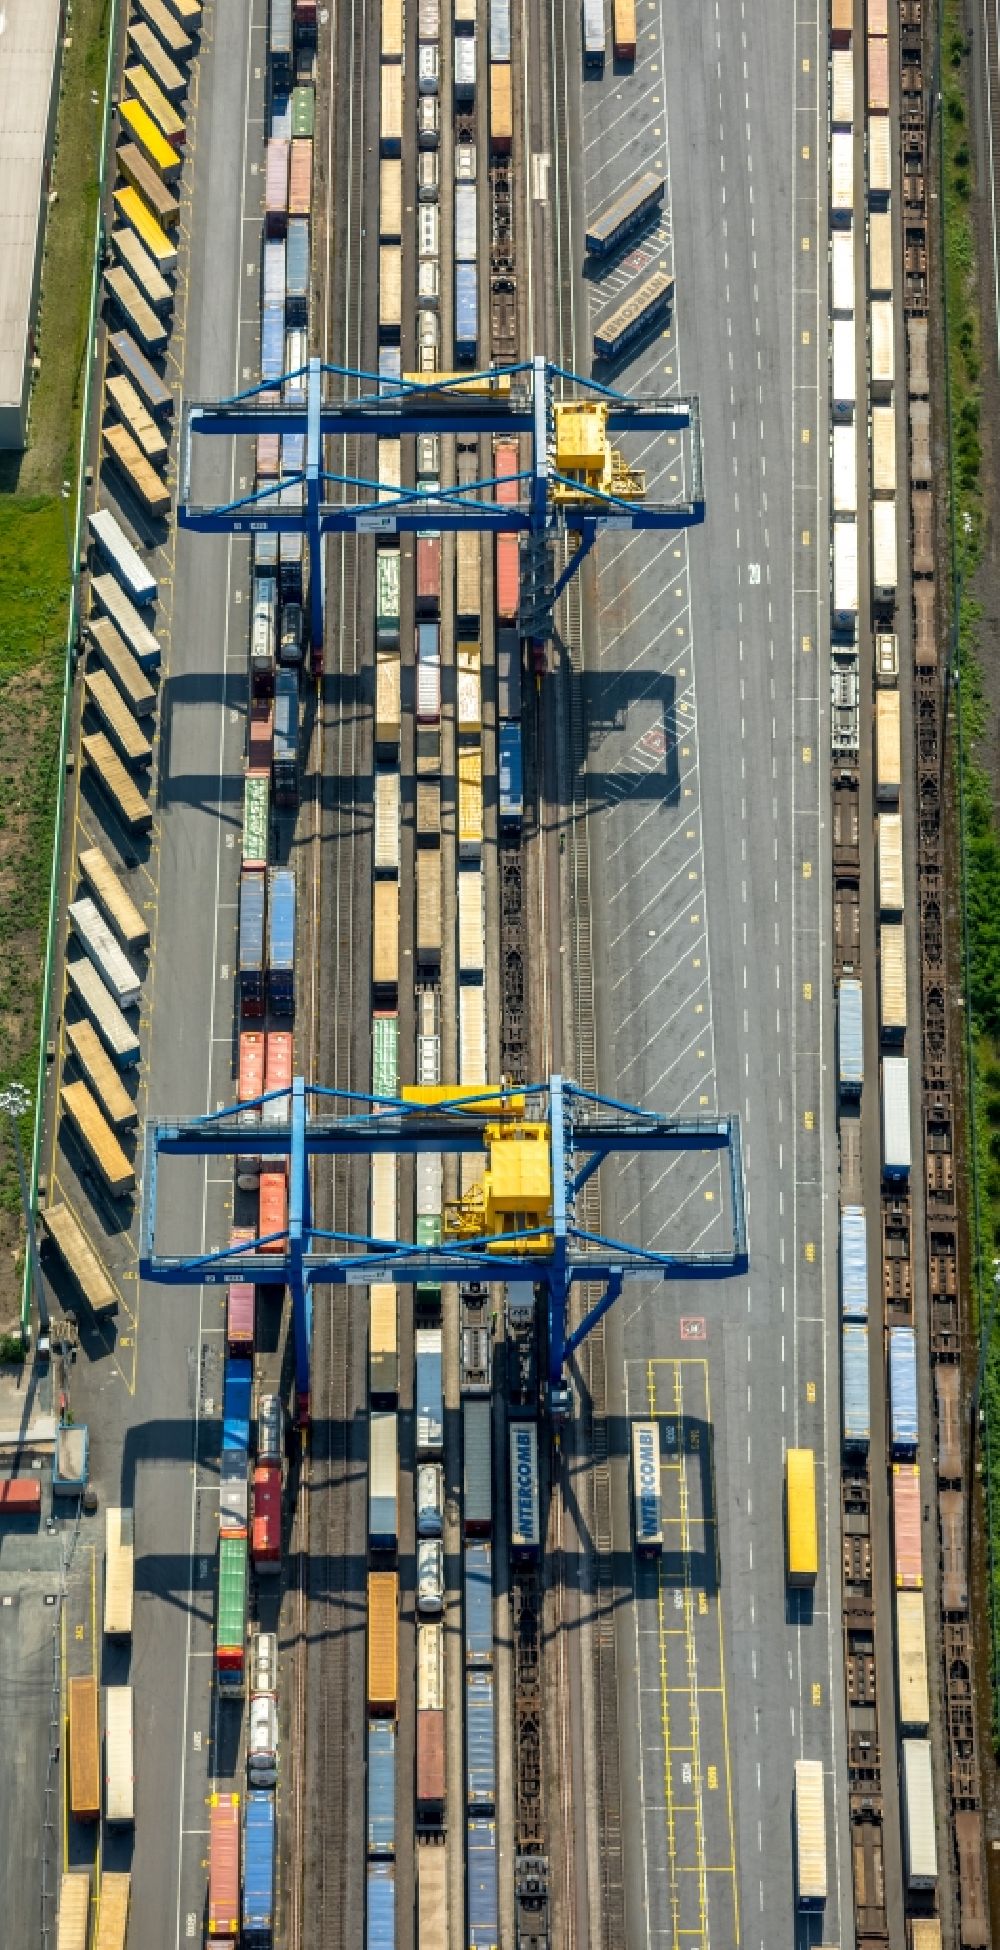 Duisburg von oben - Container- Terminal Samskip Multimodal Rail Terminal in Duisburg im Bundesland Nordrhein-Westfalen, Deutschland